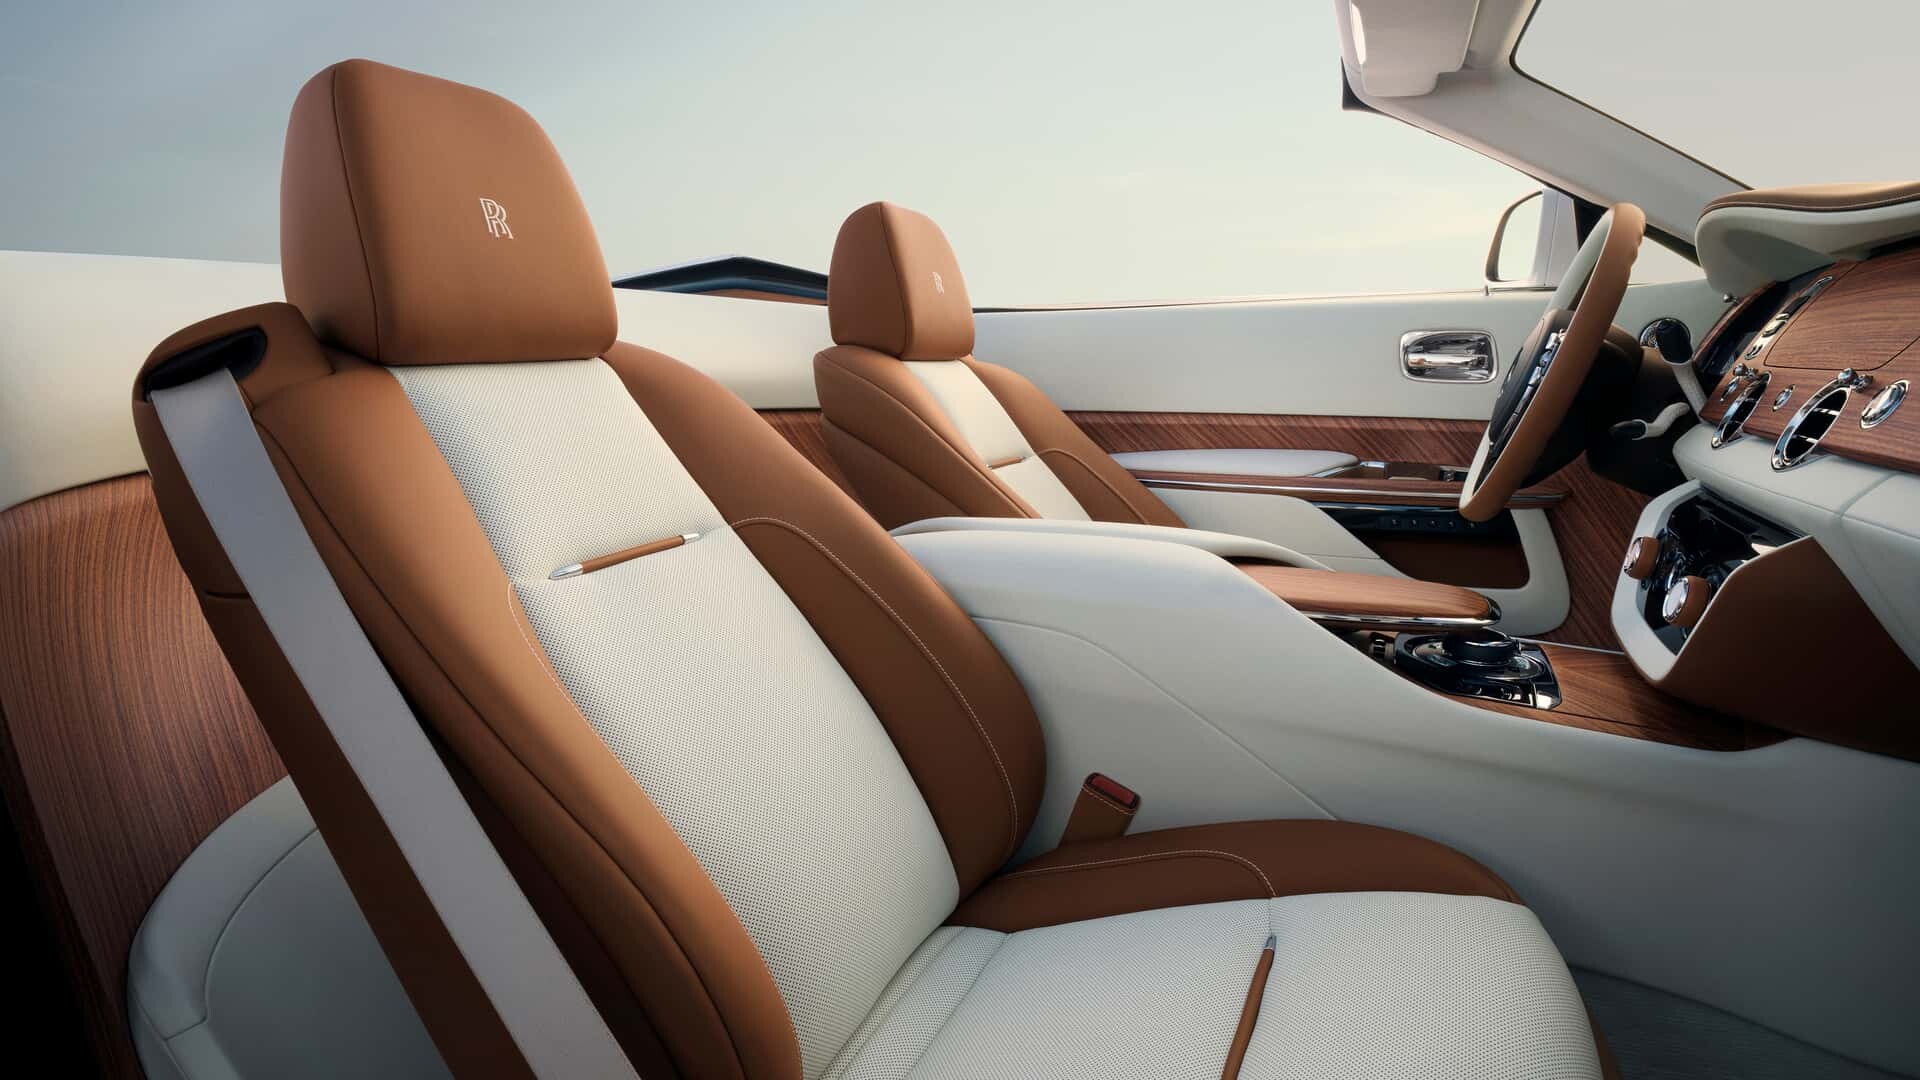 Rolls-Royce Arcadia Droptail : le luxe, telle est la définition de l'art |  Revue de la ville